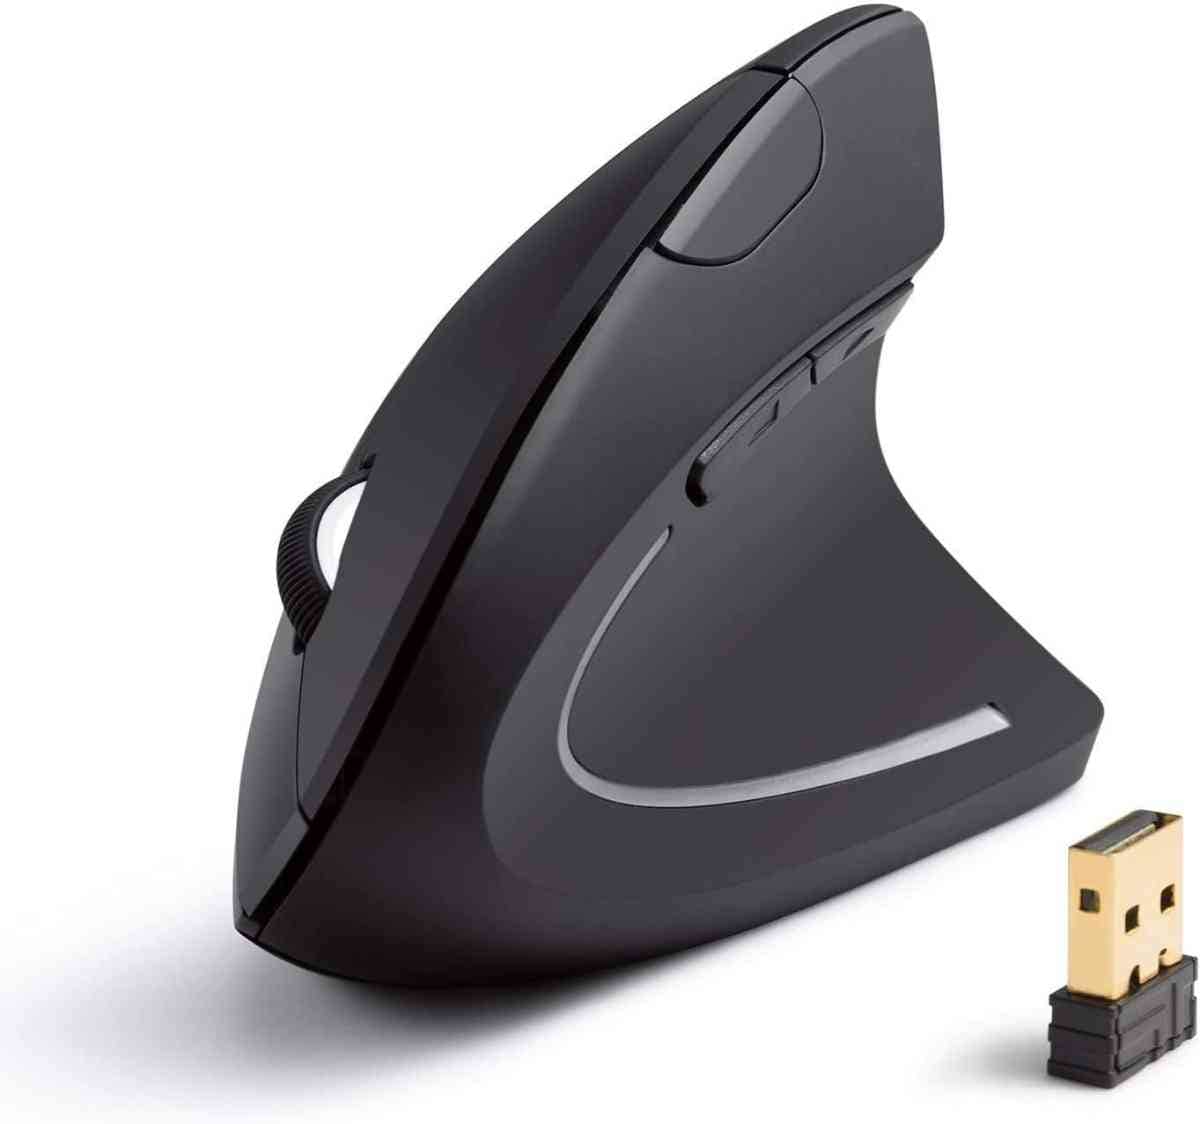 「Anker 2.4G ワイヤレスマウス」